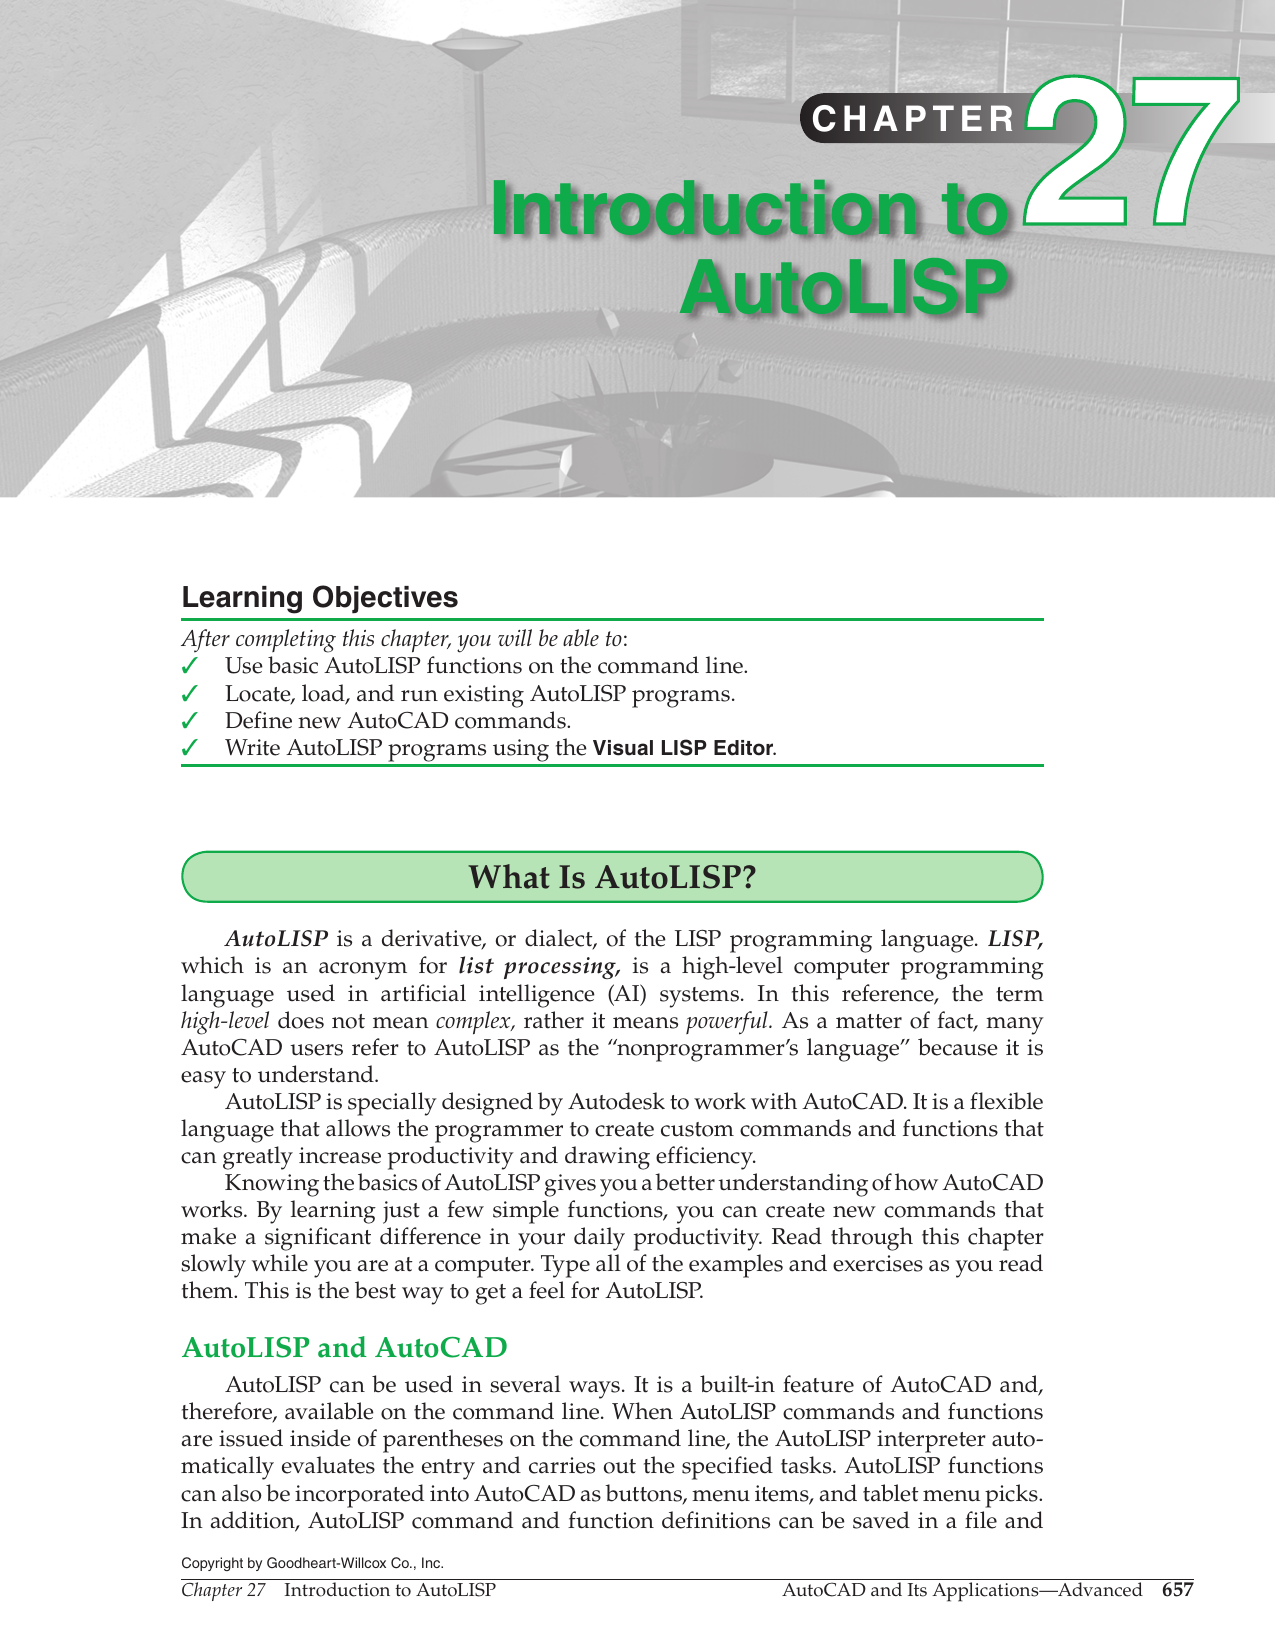 autocad lisp basics